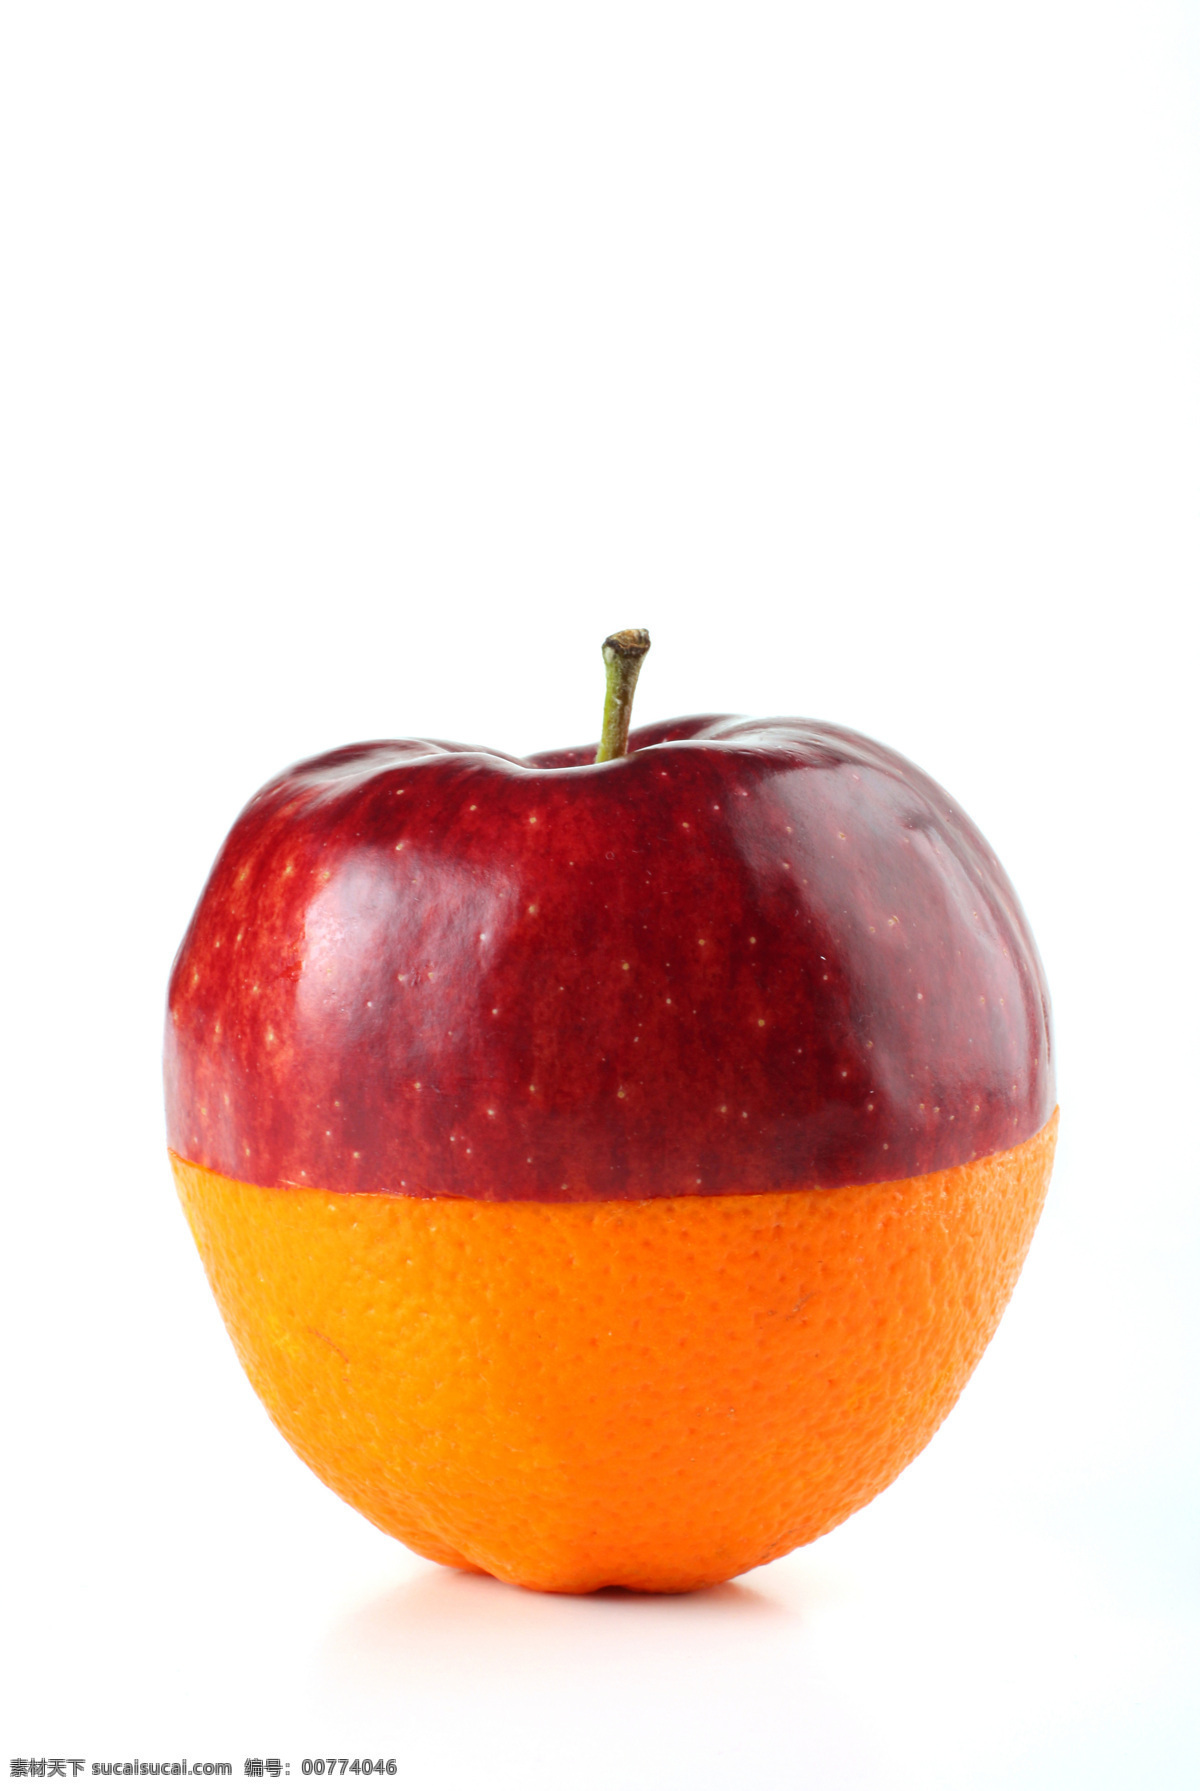 艺术 苹果 橙子 组合 一半 加 创意水果图 水果 创意 艺术水果组合 苹果图片 餐饮美食